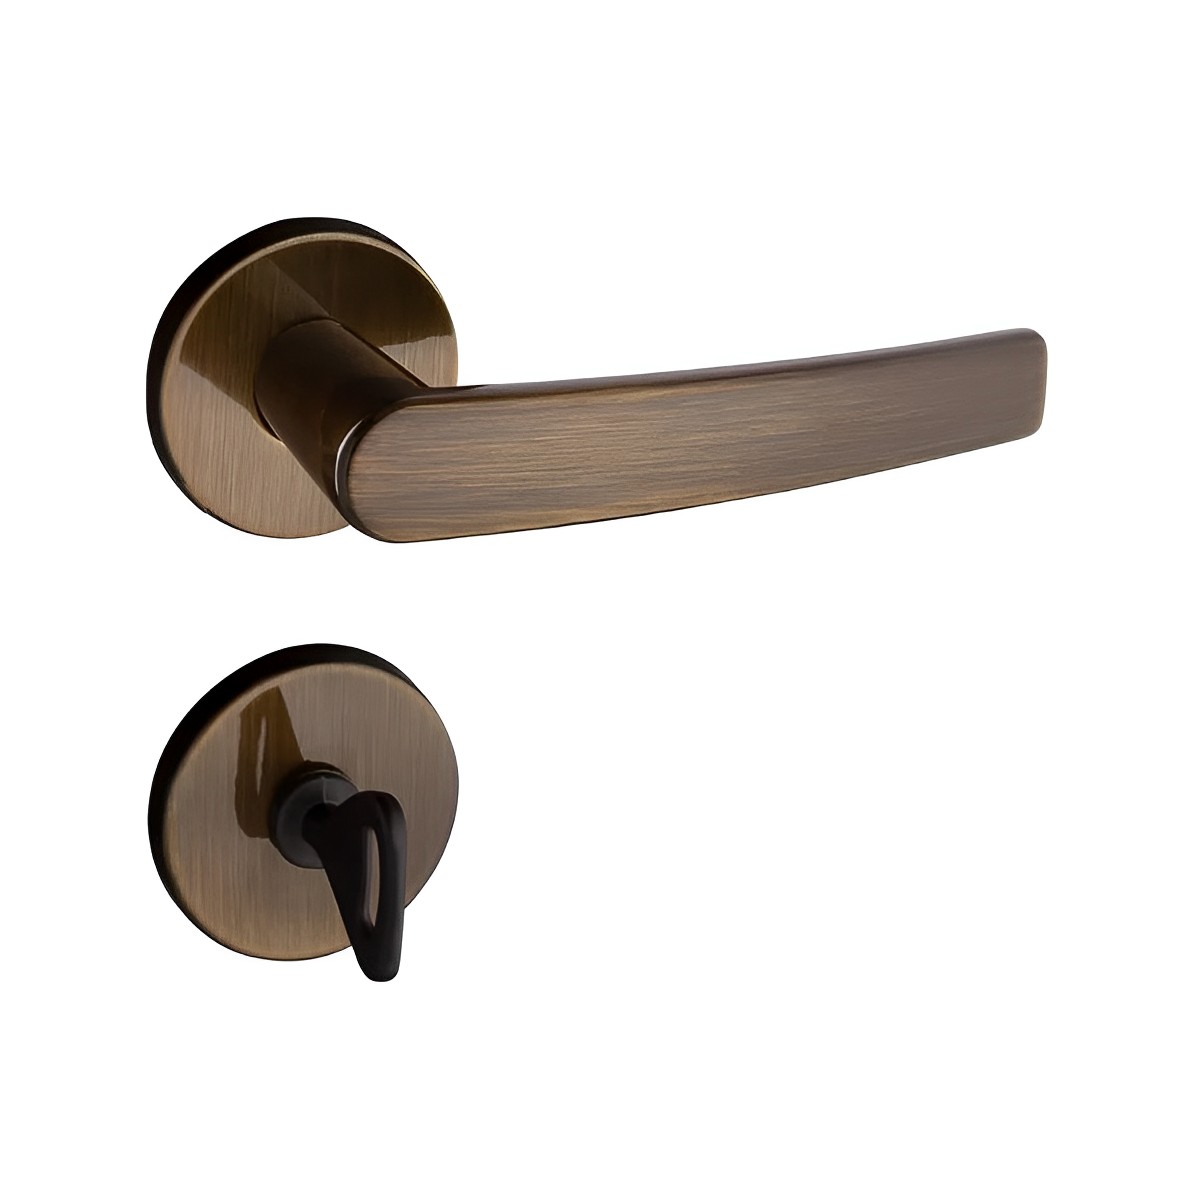 Fechadura Banheiro Concept Redonda 401 Bronze Oxidado - Pado